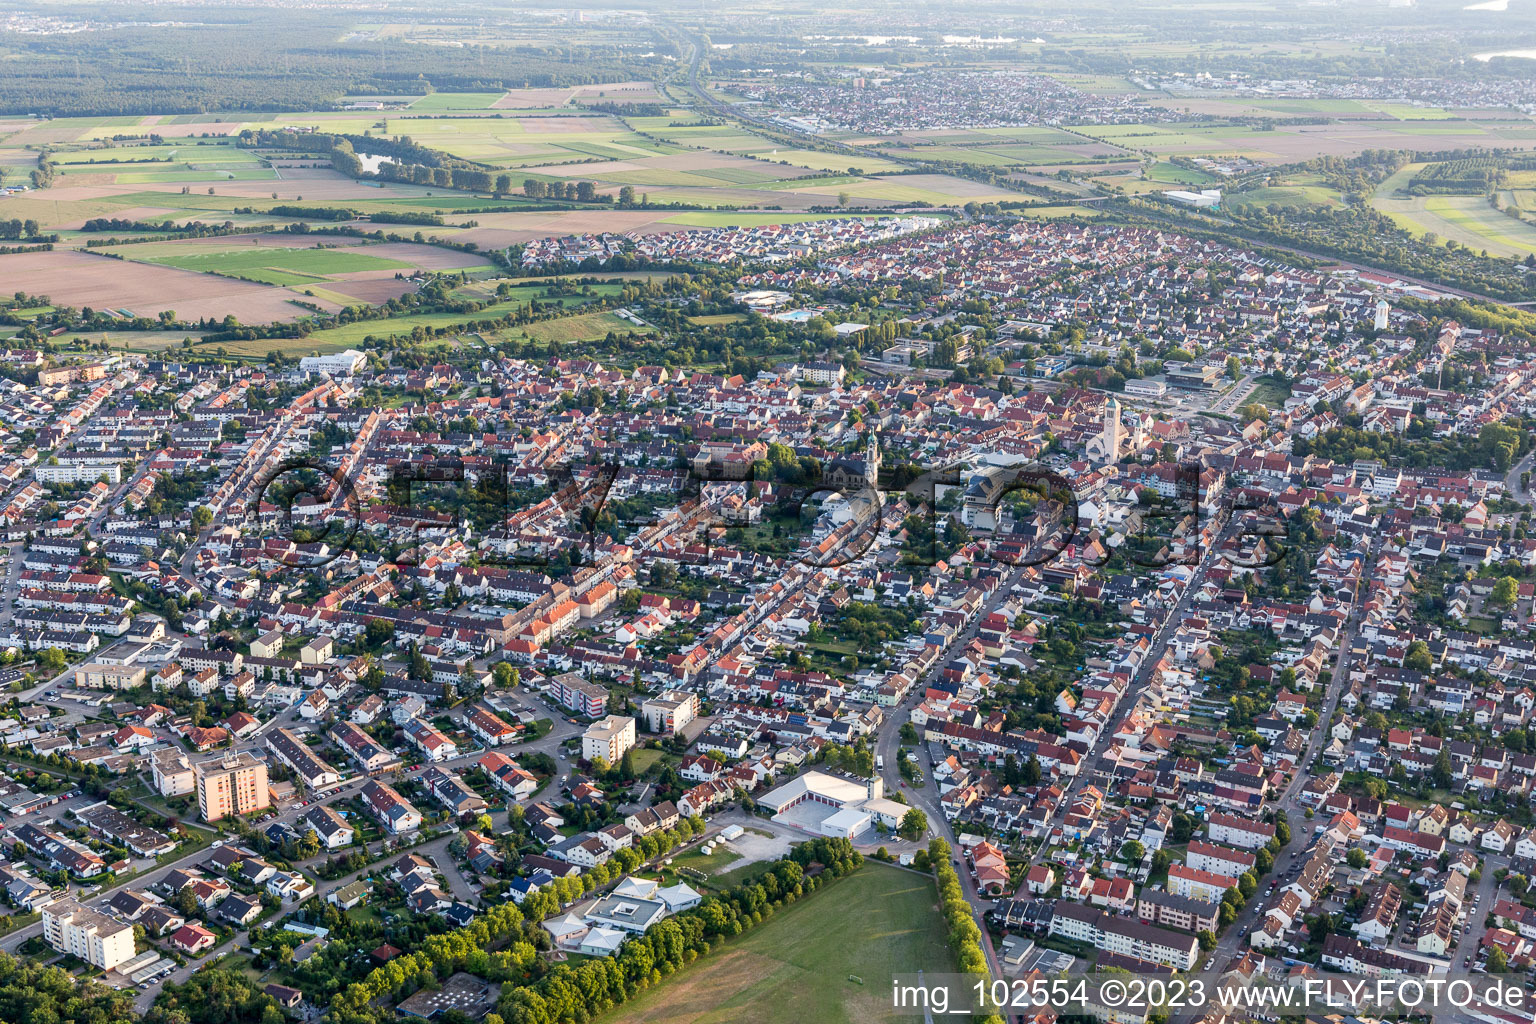 Hockenheim im Bundesland Baden-Württemberg, Deutschland von einer Drohne aus